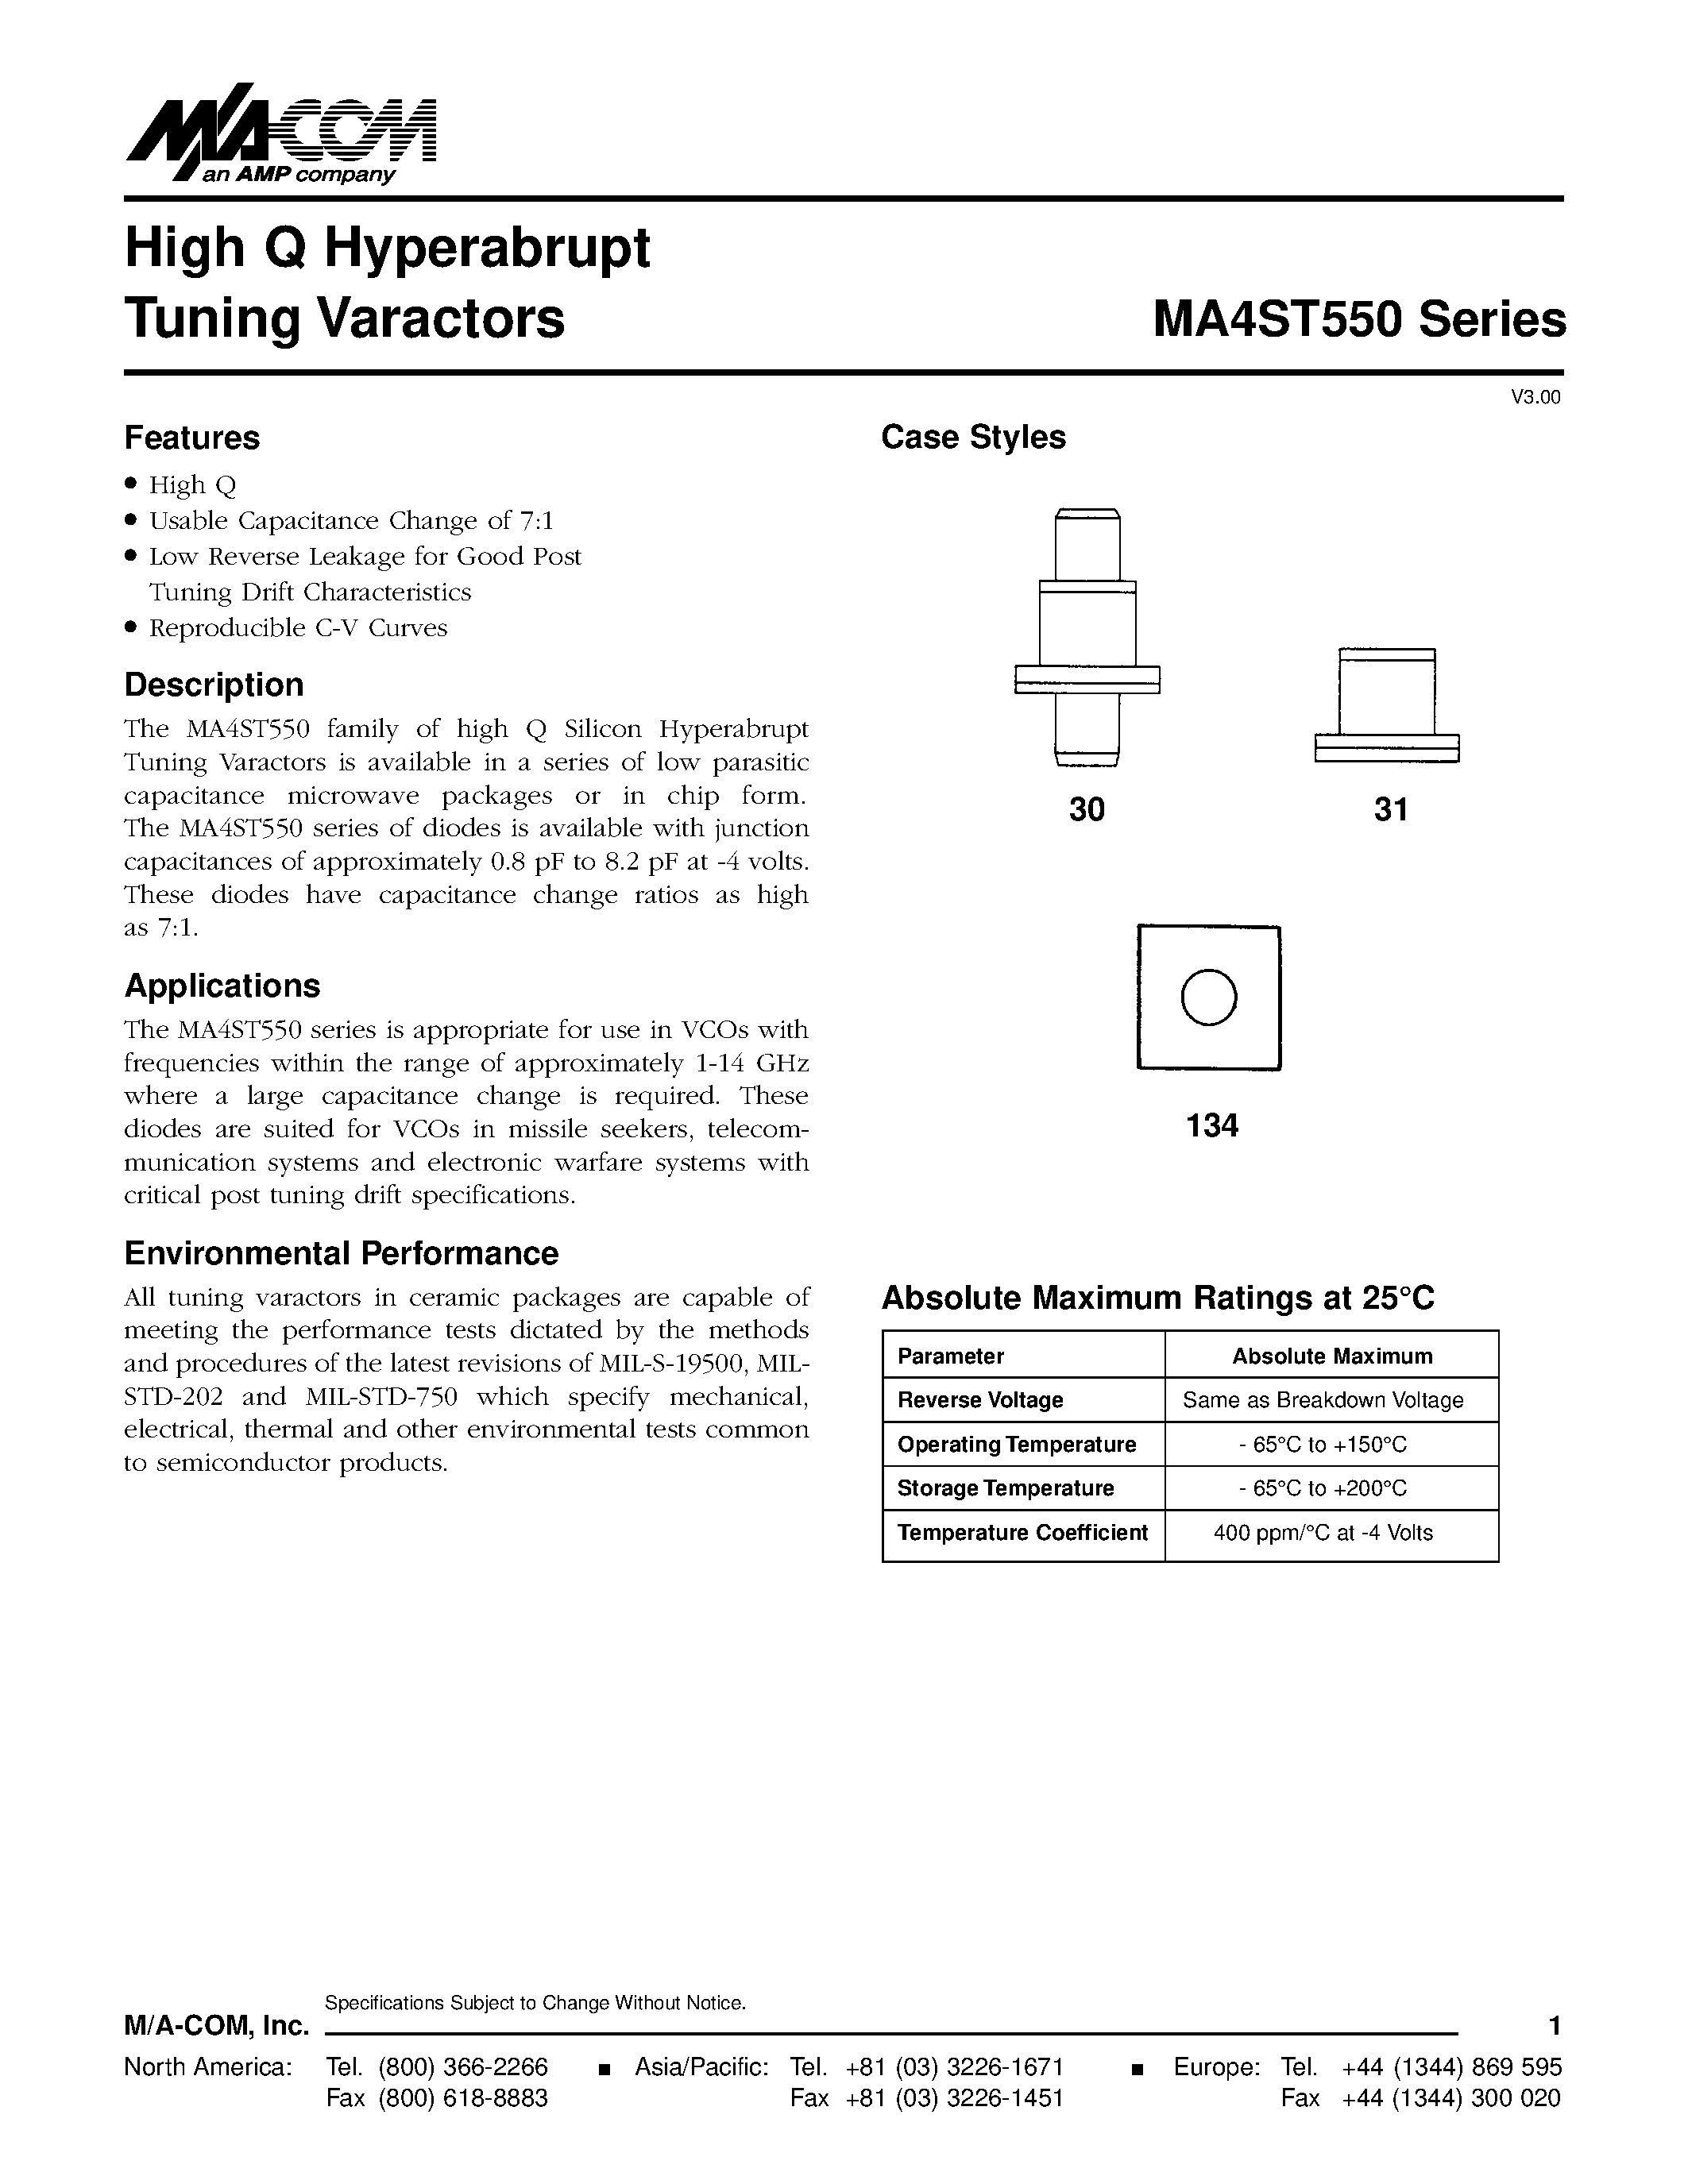 Даташит MA4ST550 - High Q Hyperabrupt Tuning Varactors страница 1